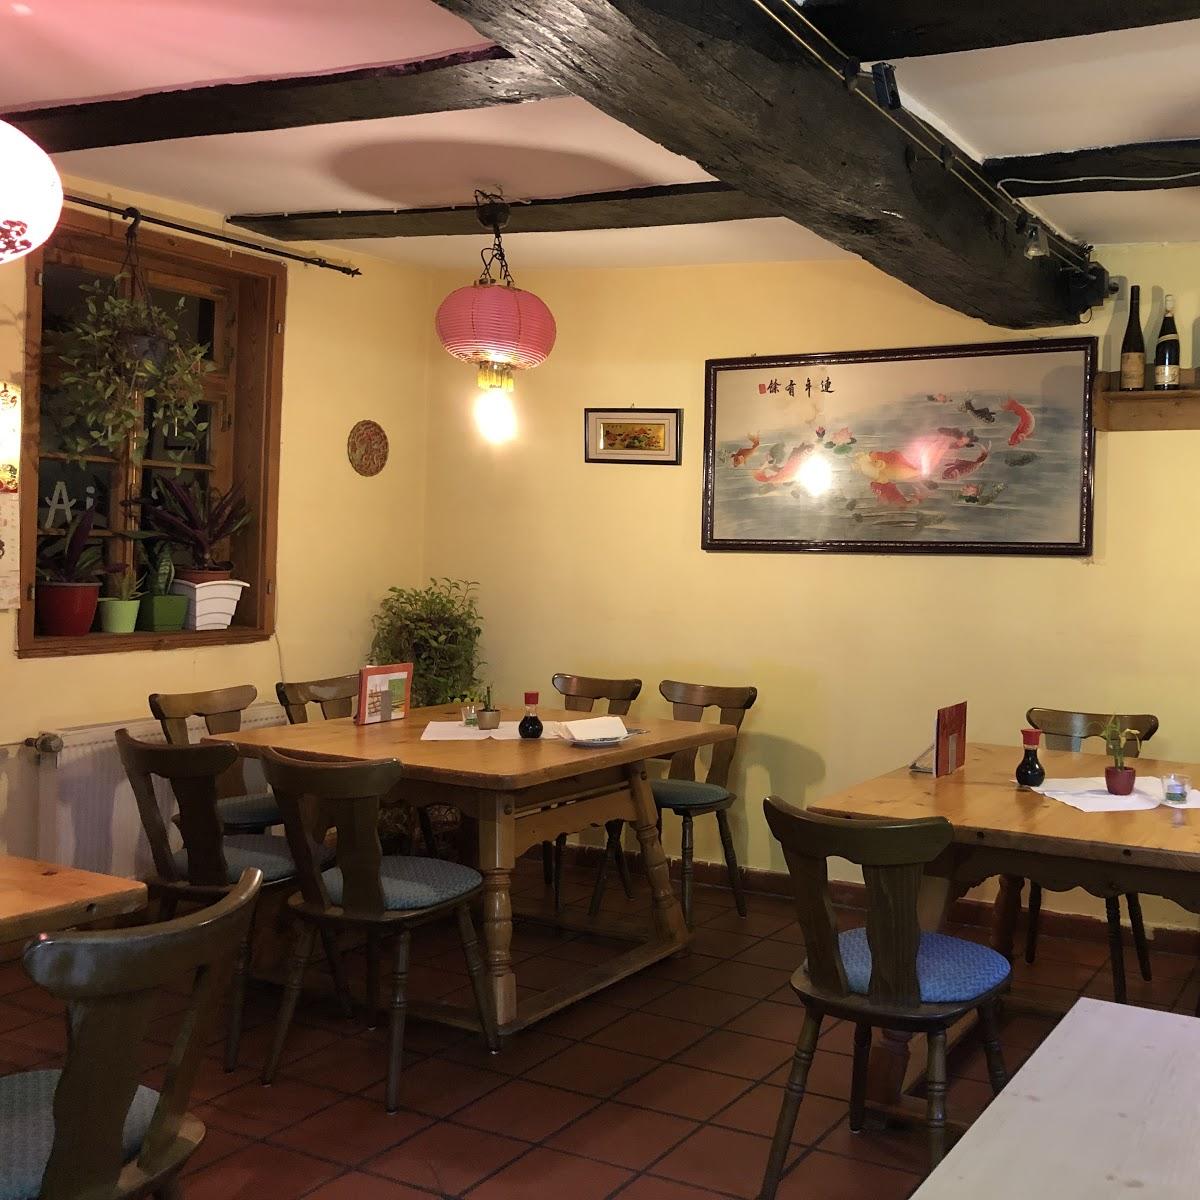 Restaurant "Minh Anh Asiatische Spezialitäten" in Spangenberg